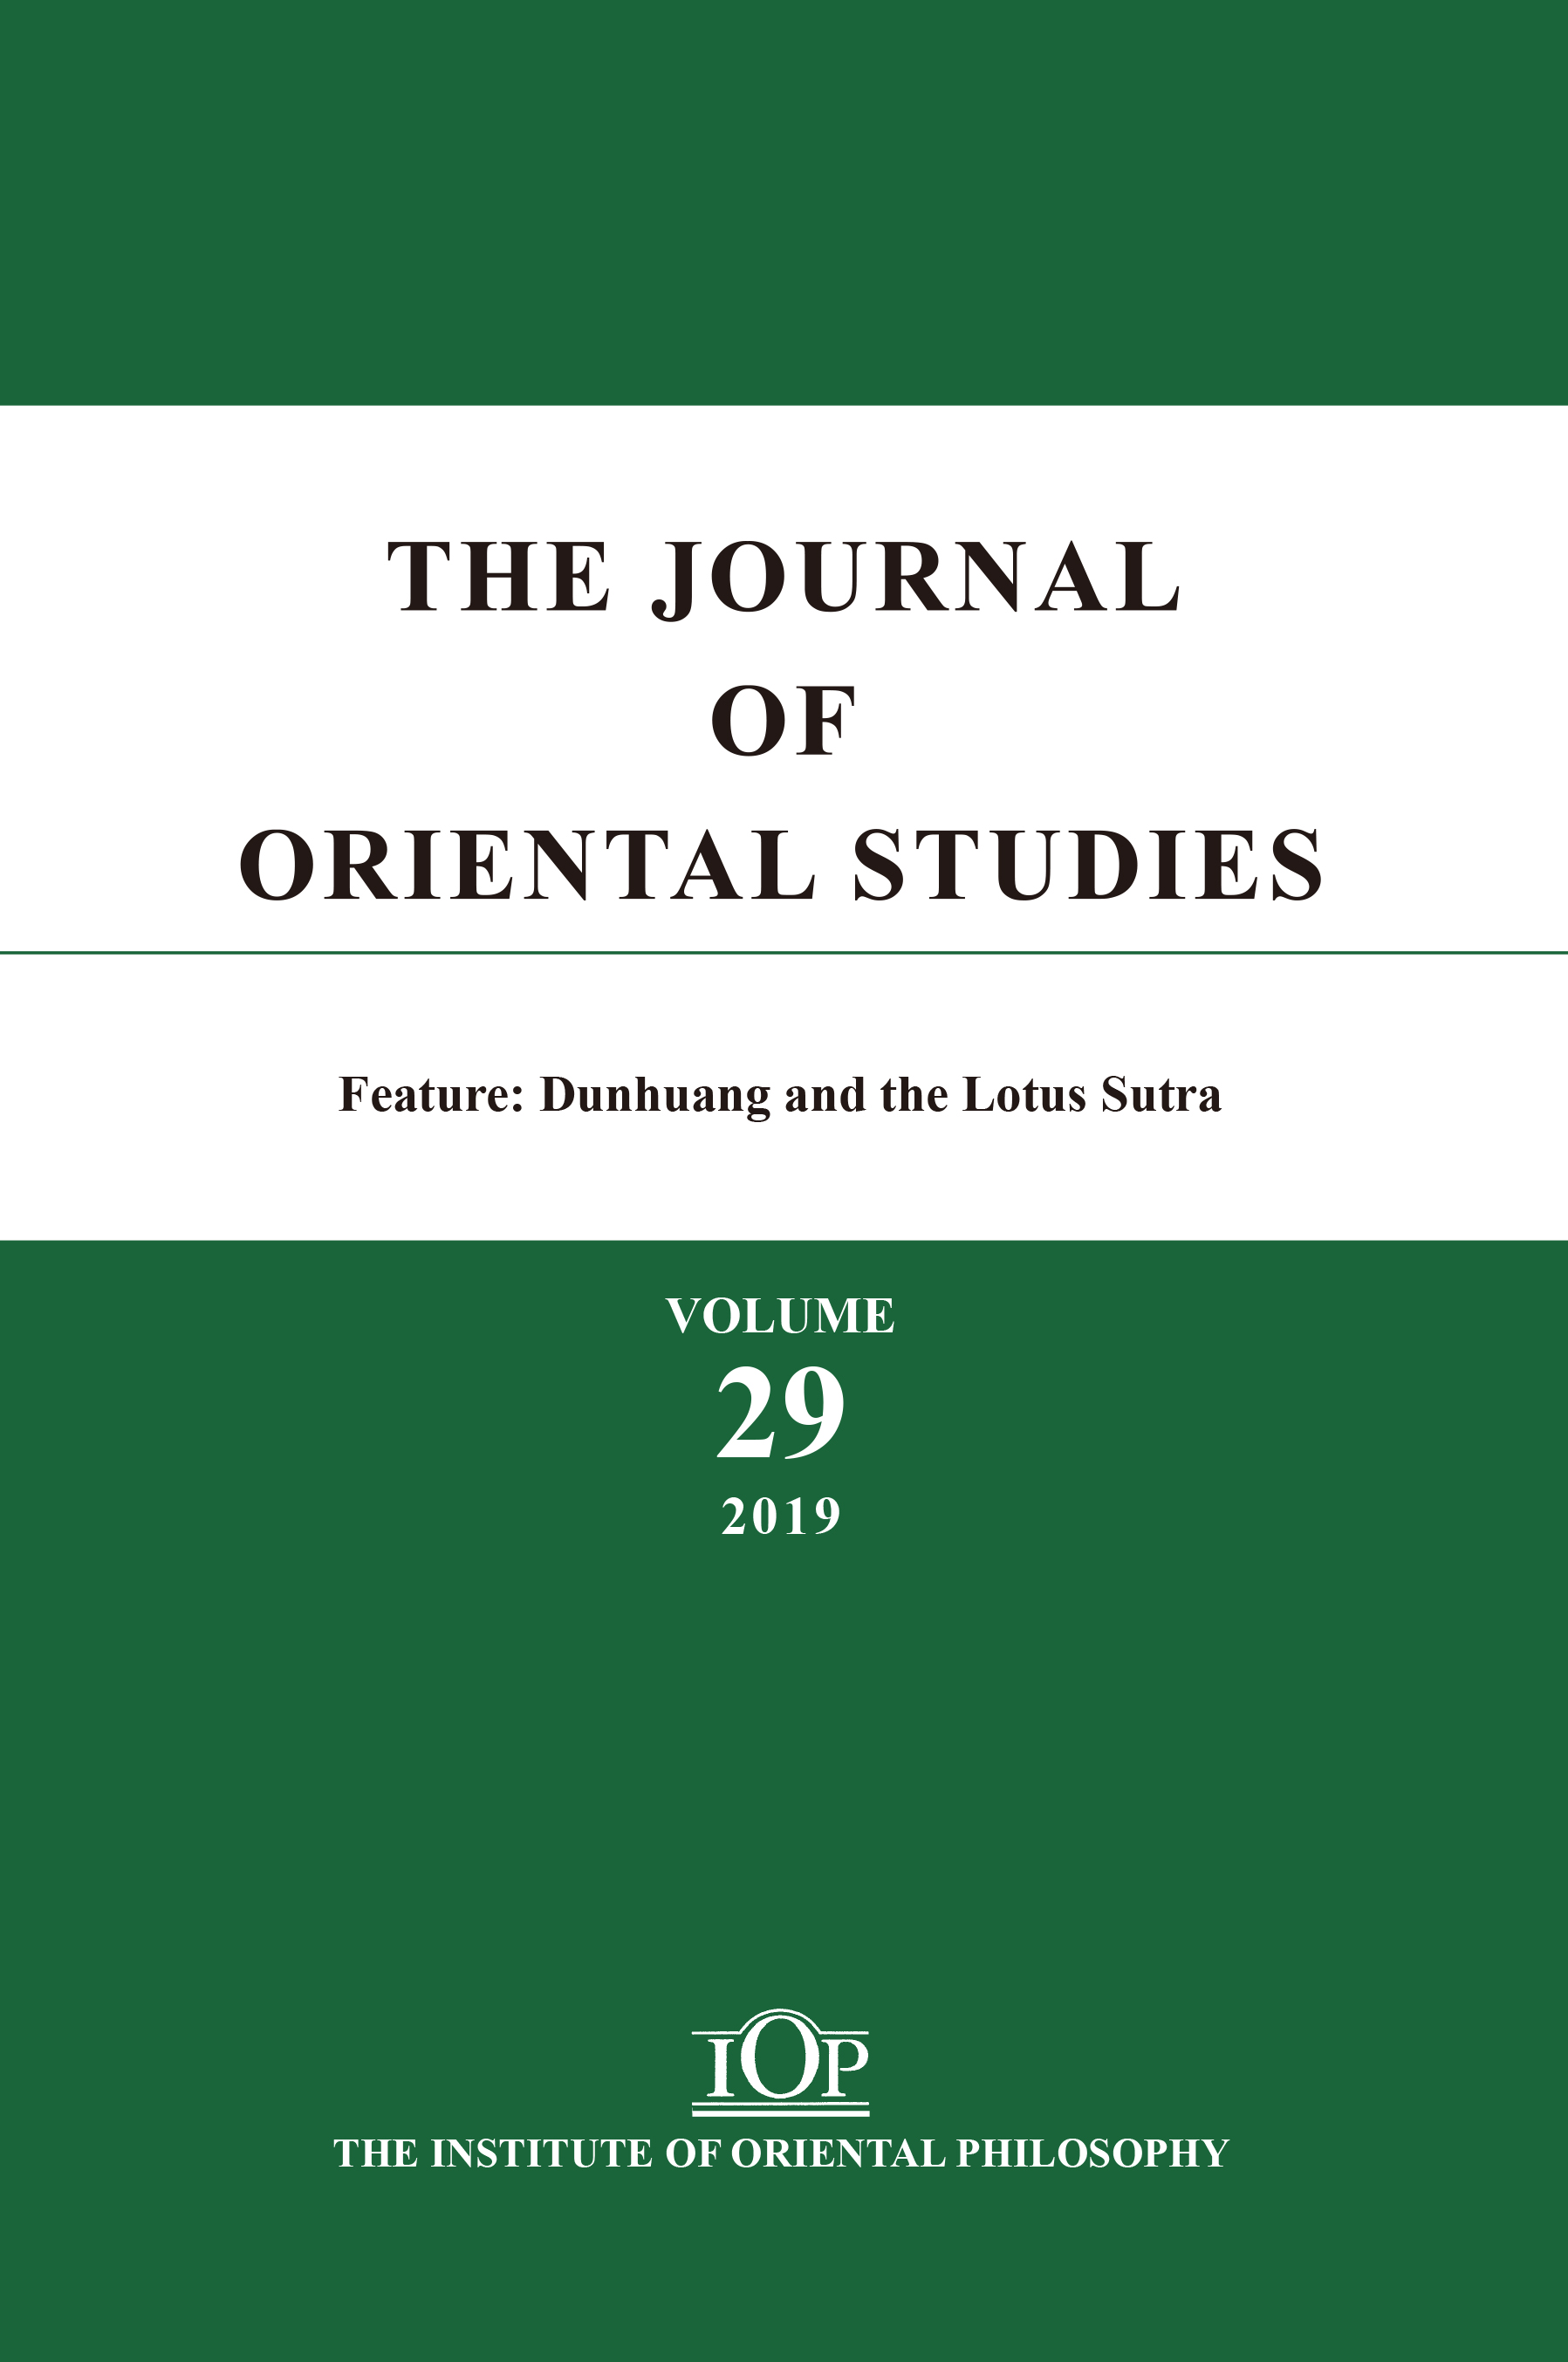 THE JOURNAL OF ORIENTAL STUDIES（Vol. 29）